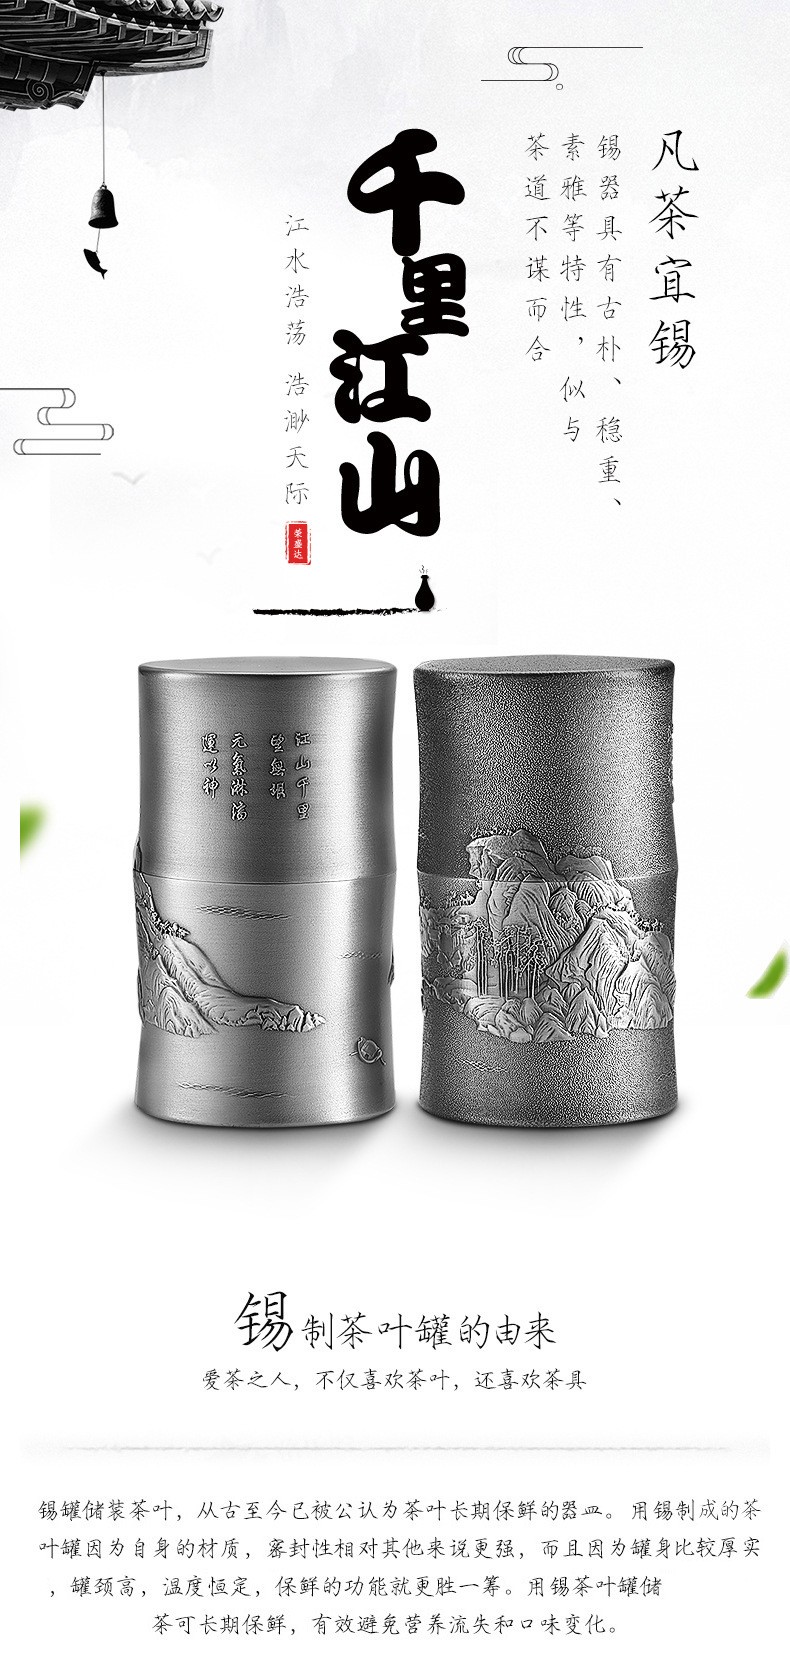 荣盛达千里江山雕刻茶叶罐